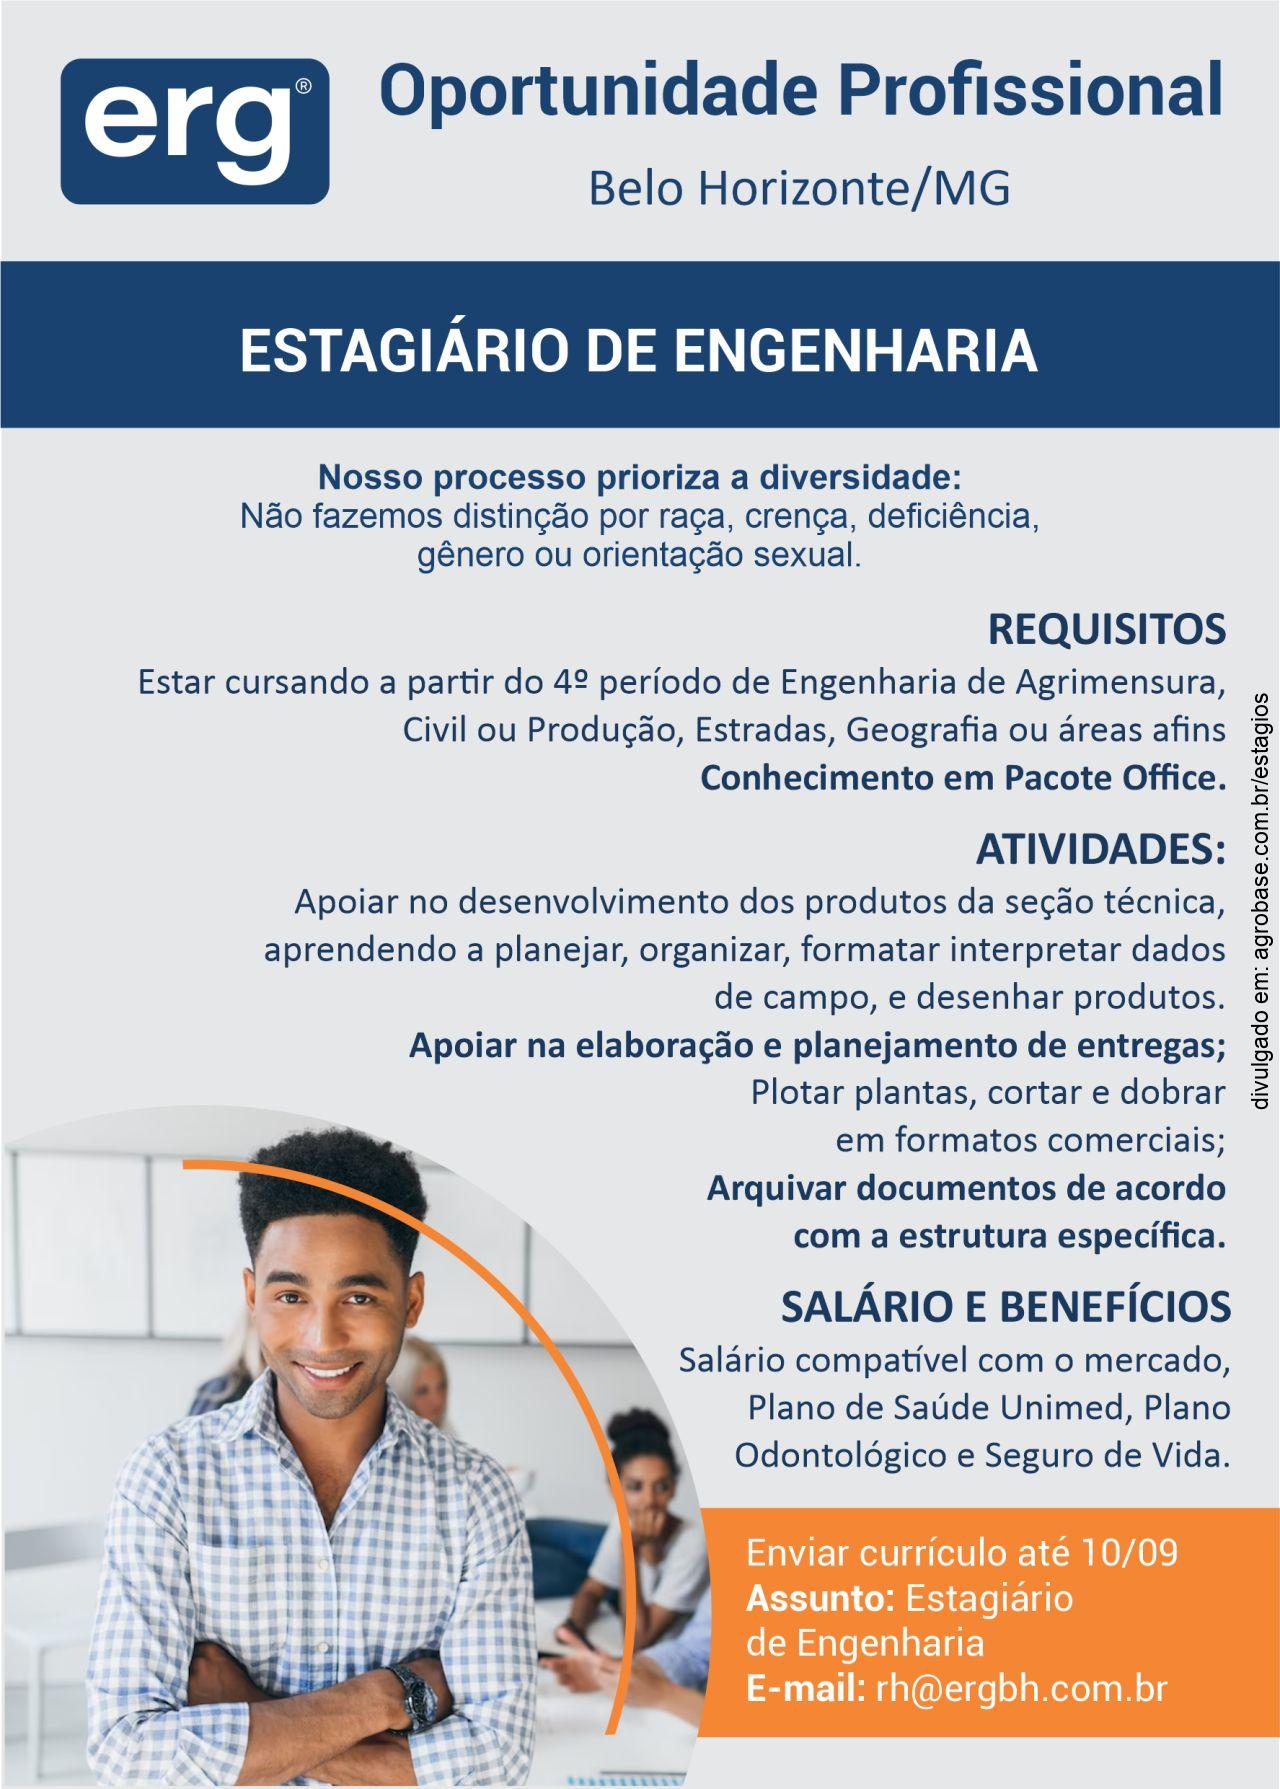 Estagiário de engenharia – Belo Horizonte/MG